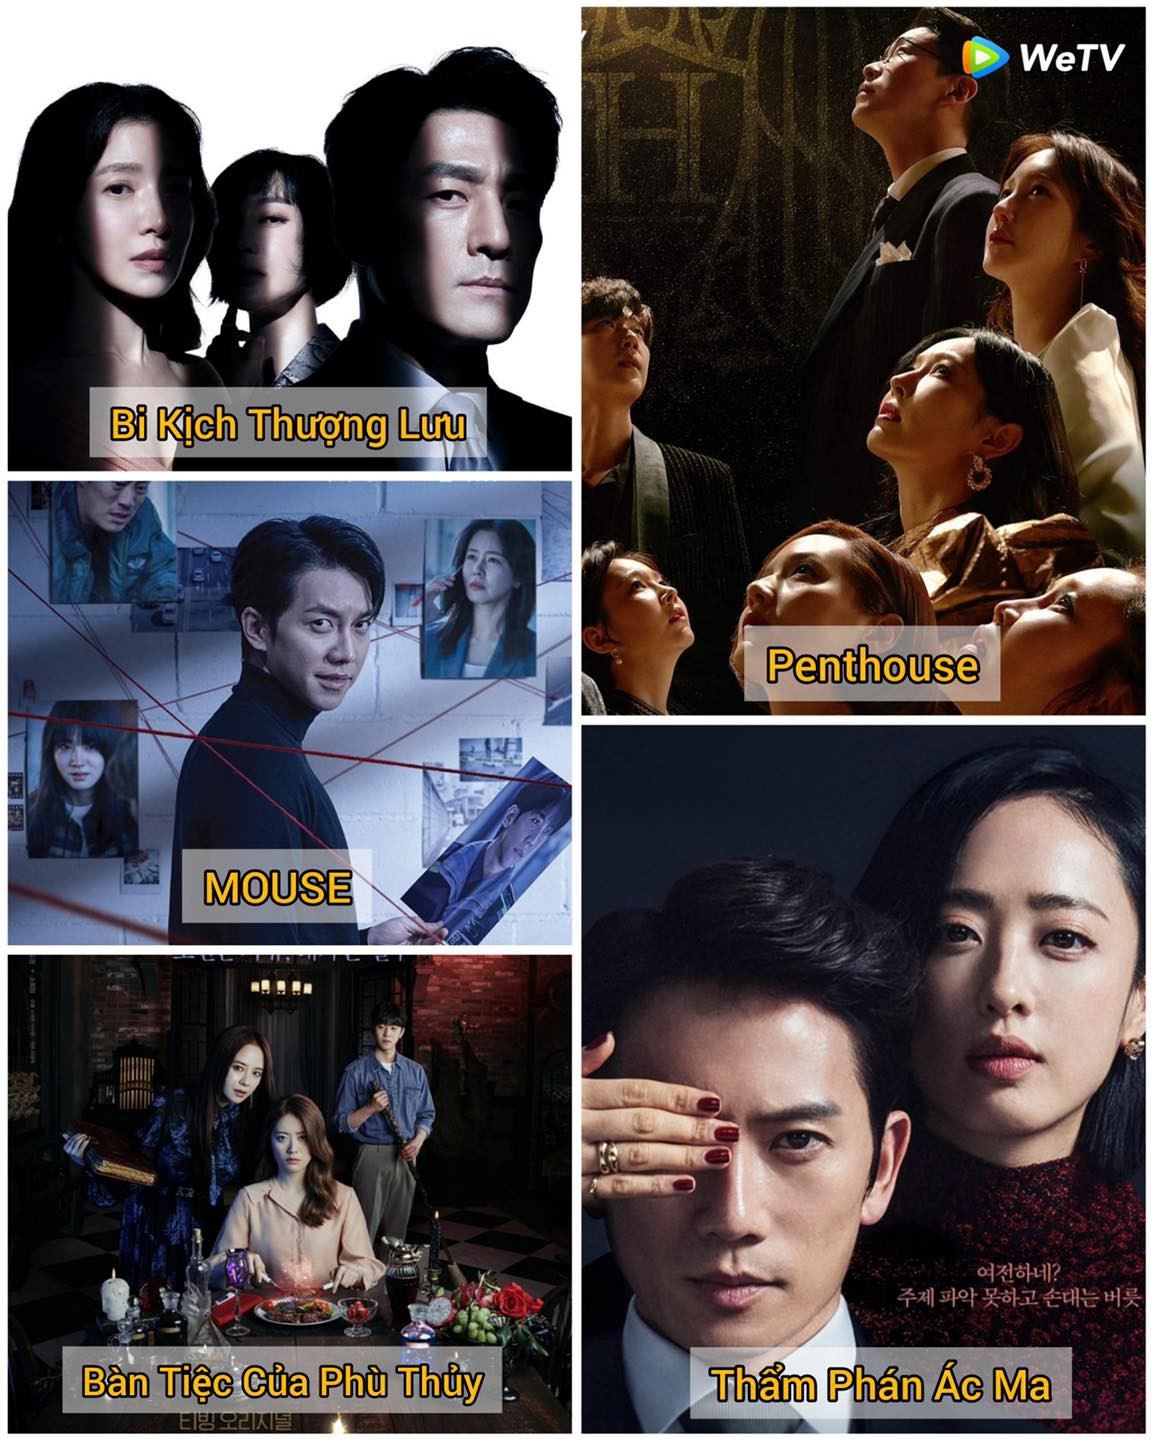 Top 5 bộ phim Hàn Quốc mới nhất có cốt truyện cực xoắn não khiến người xem không thể rời mắt